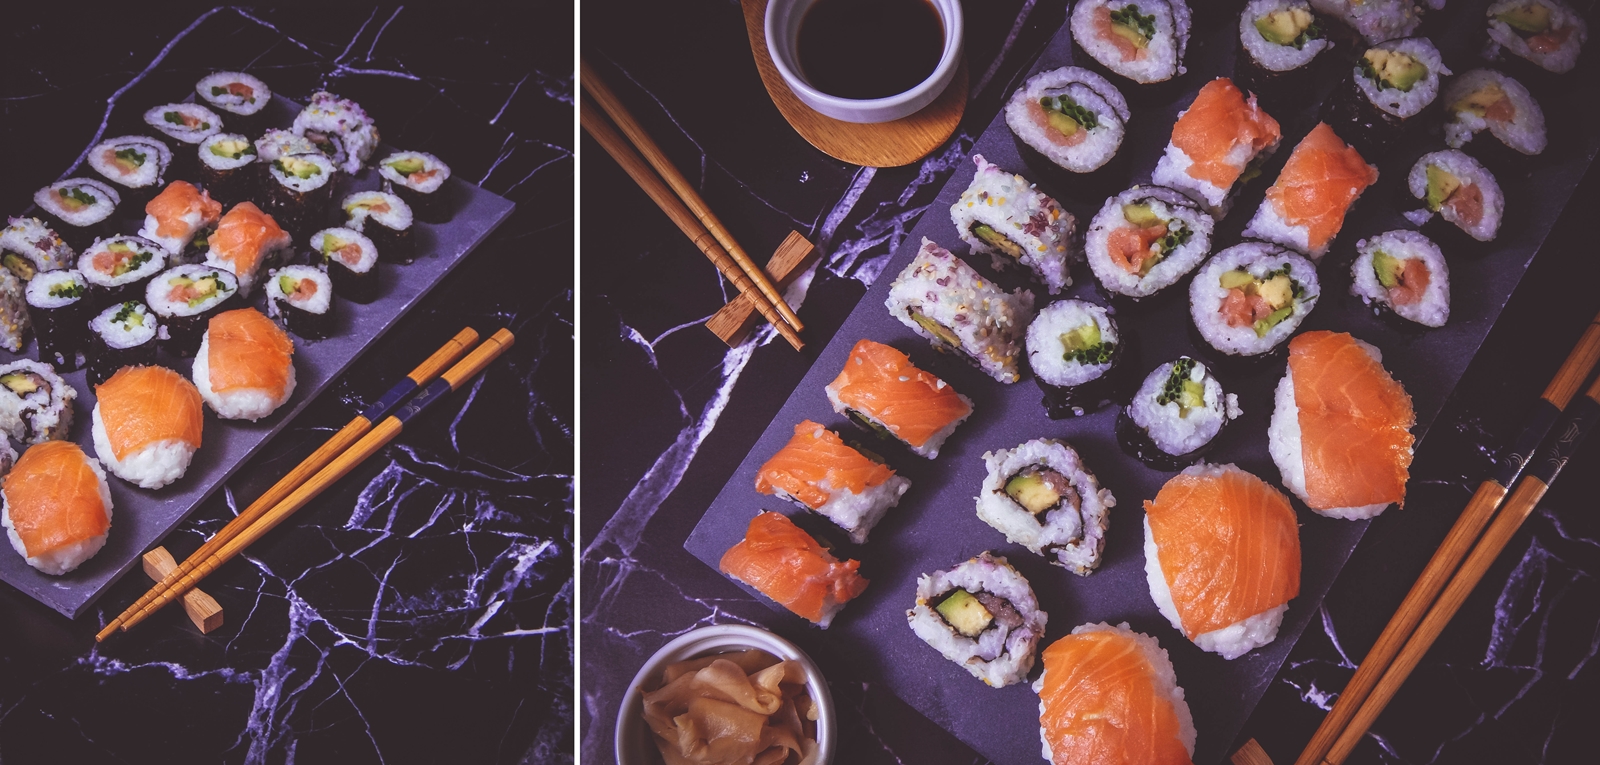 przepis na sushi jak zrobić sushi sushi bez surowej ryby z wędzonym łososiem dragon sushi przepis pomysły rodzaje sushi blog kulinarny melodylaniella łódź blogerka łódzka